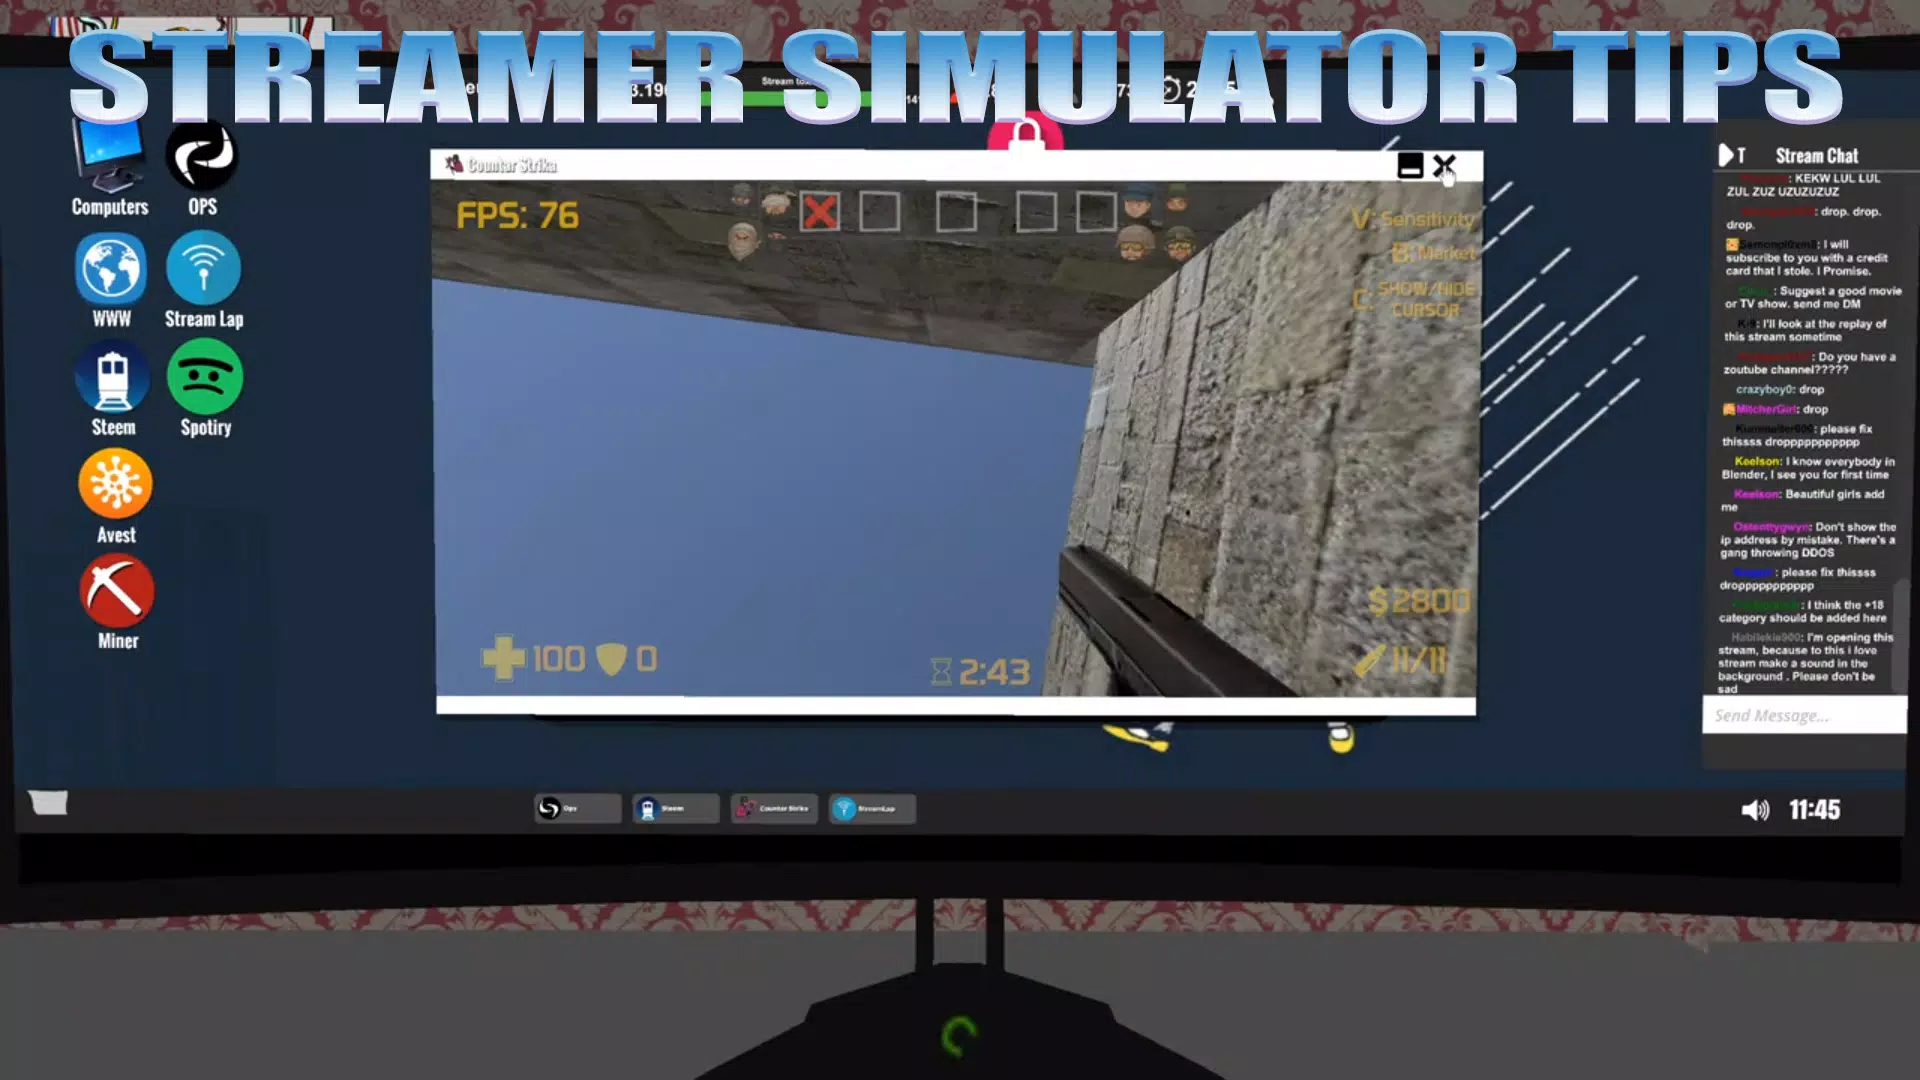 Download do APK de Streamer Life Simulator : tips and hints para